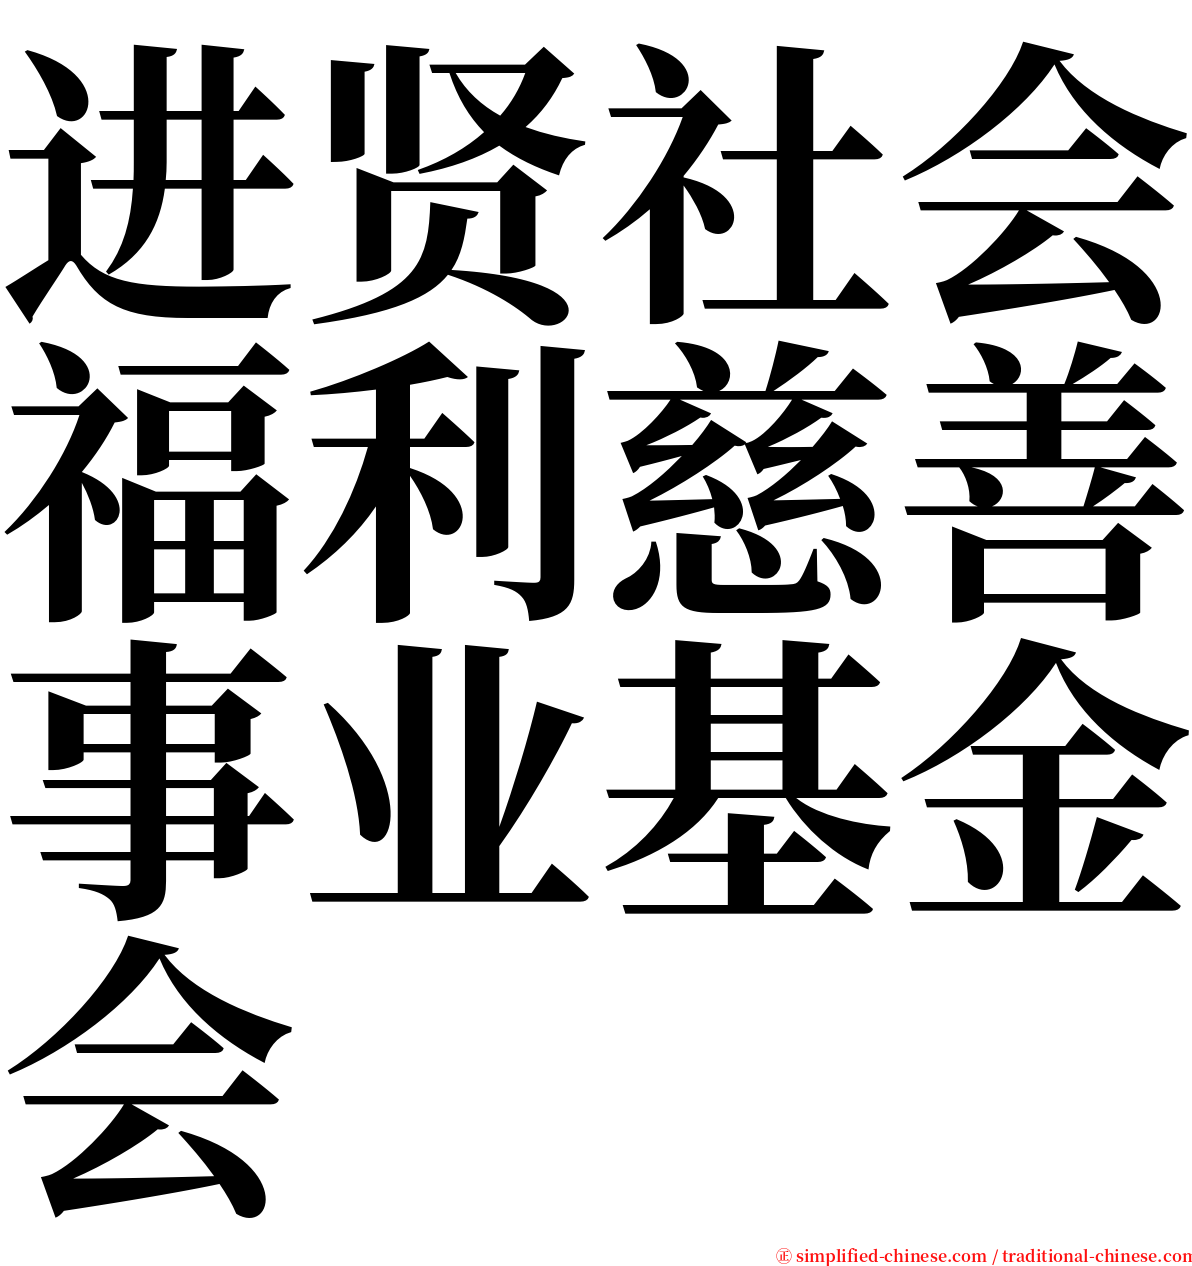 进贤社会福利慈善事业基金会 serif font